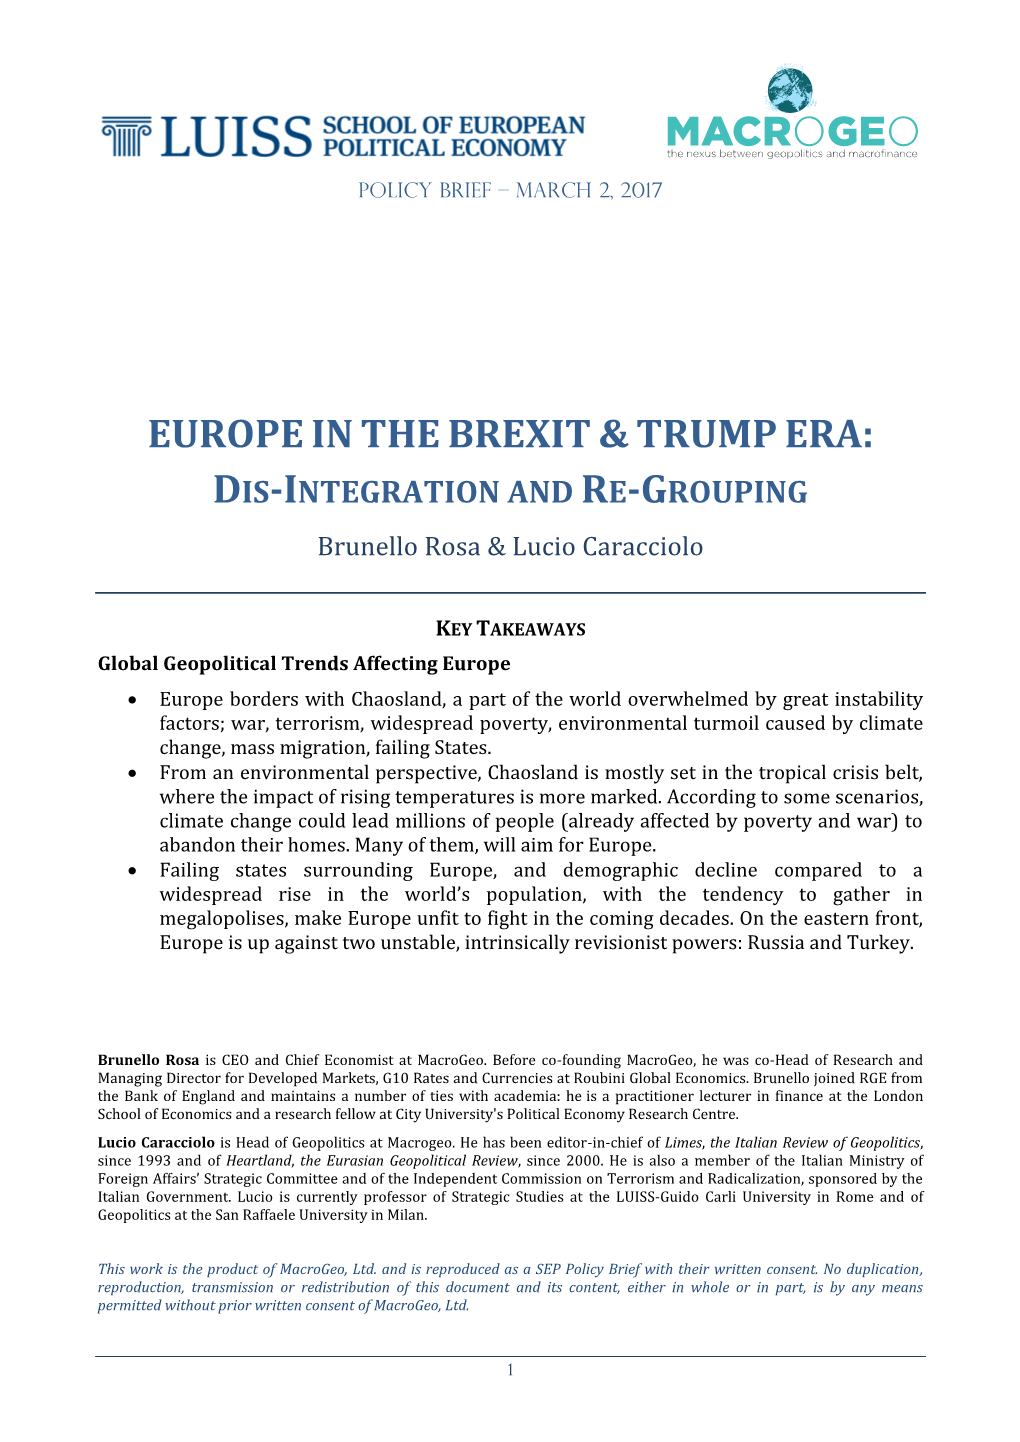 Europeinthebrexit&Trump